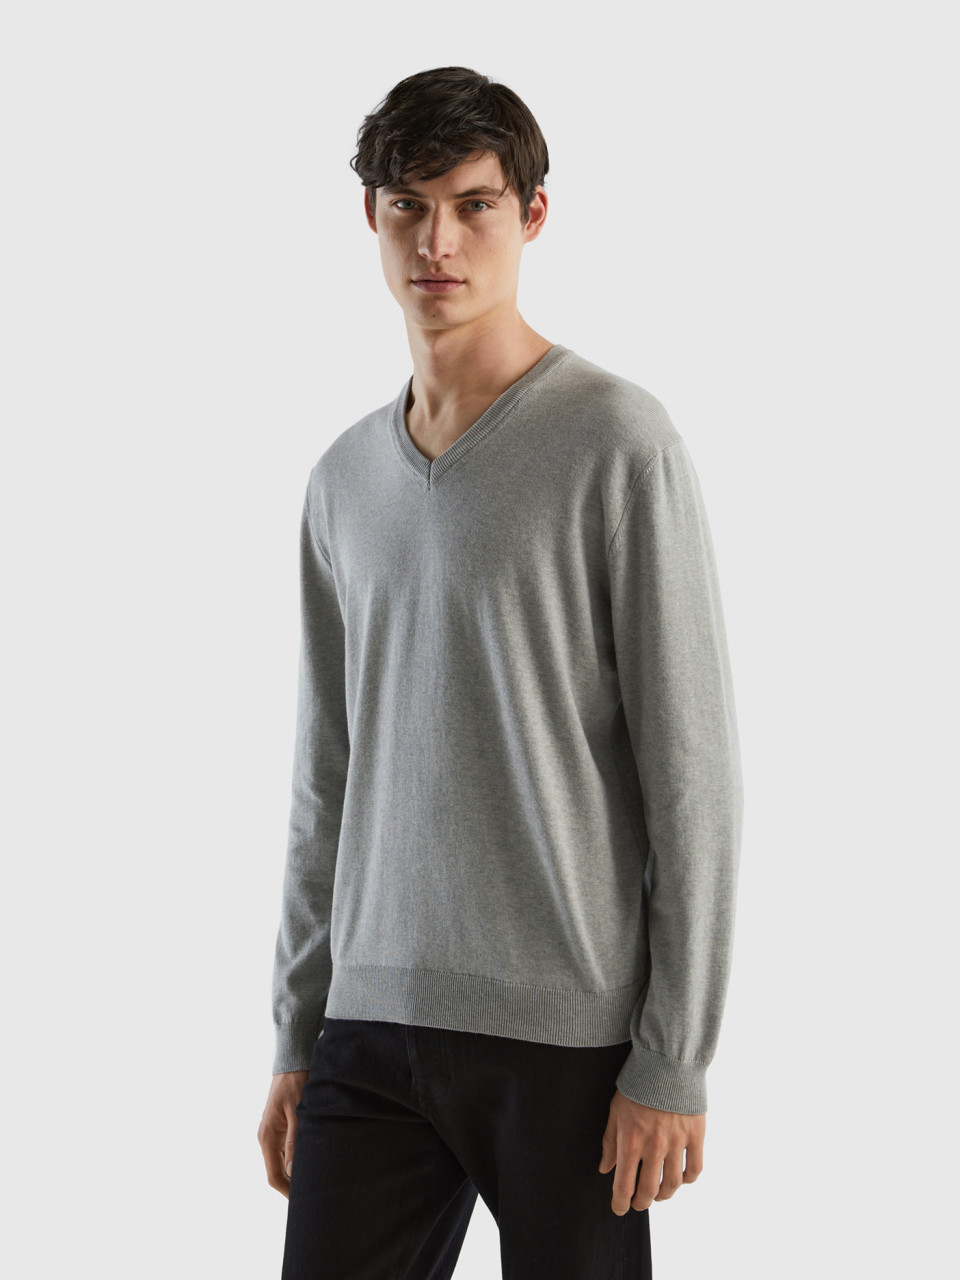 Benetton, V-neck Sweater In Pure Cotton, Light Gray, Men